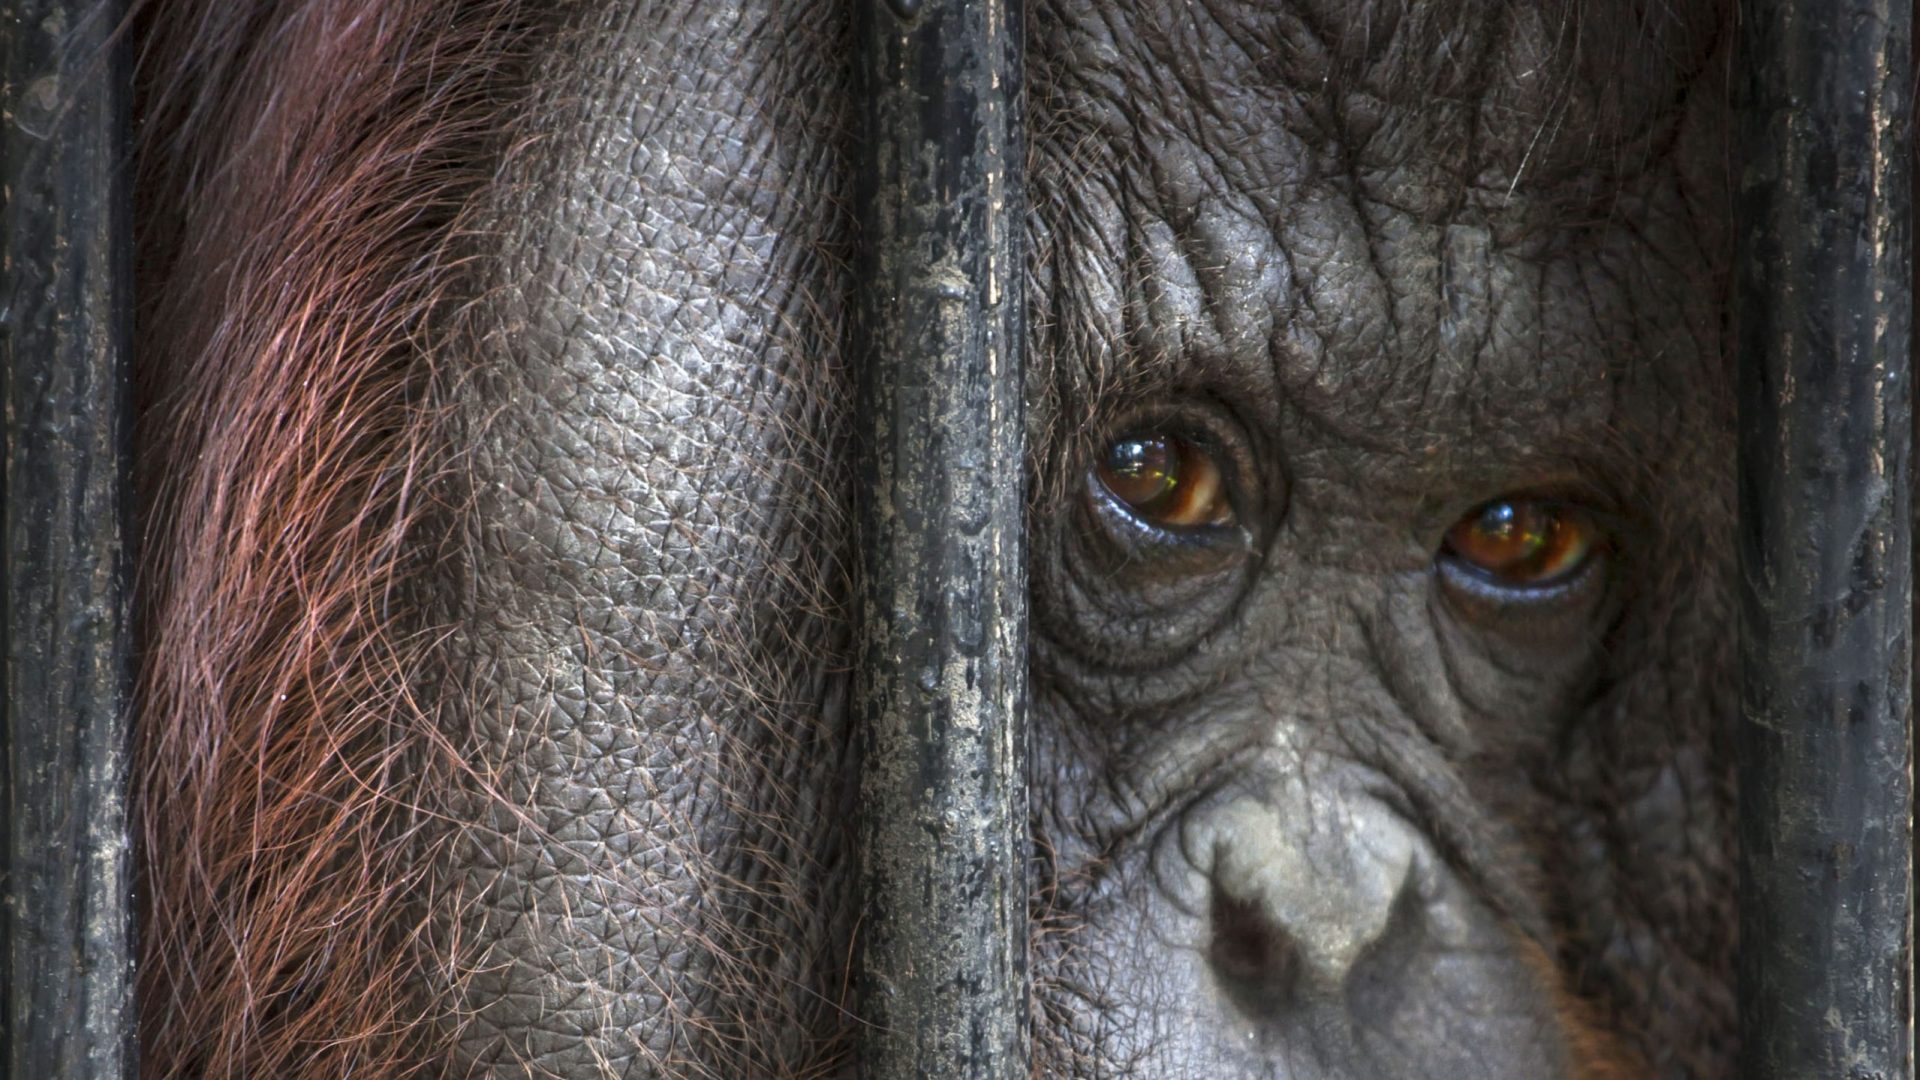 Close up of an orangutan looking through bars